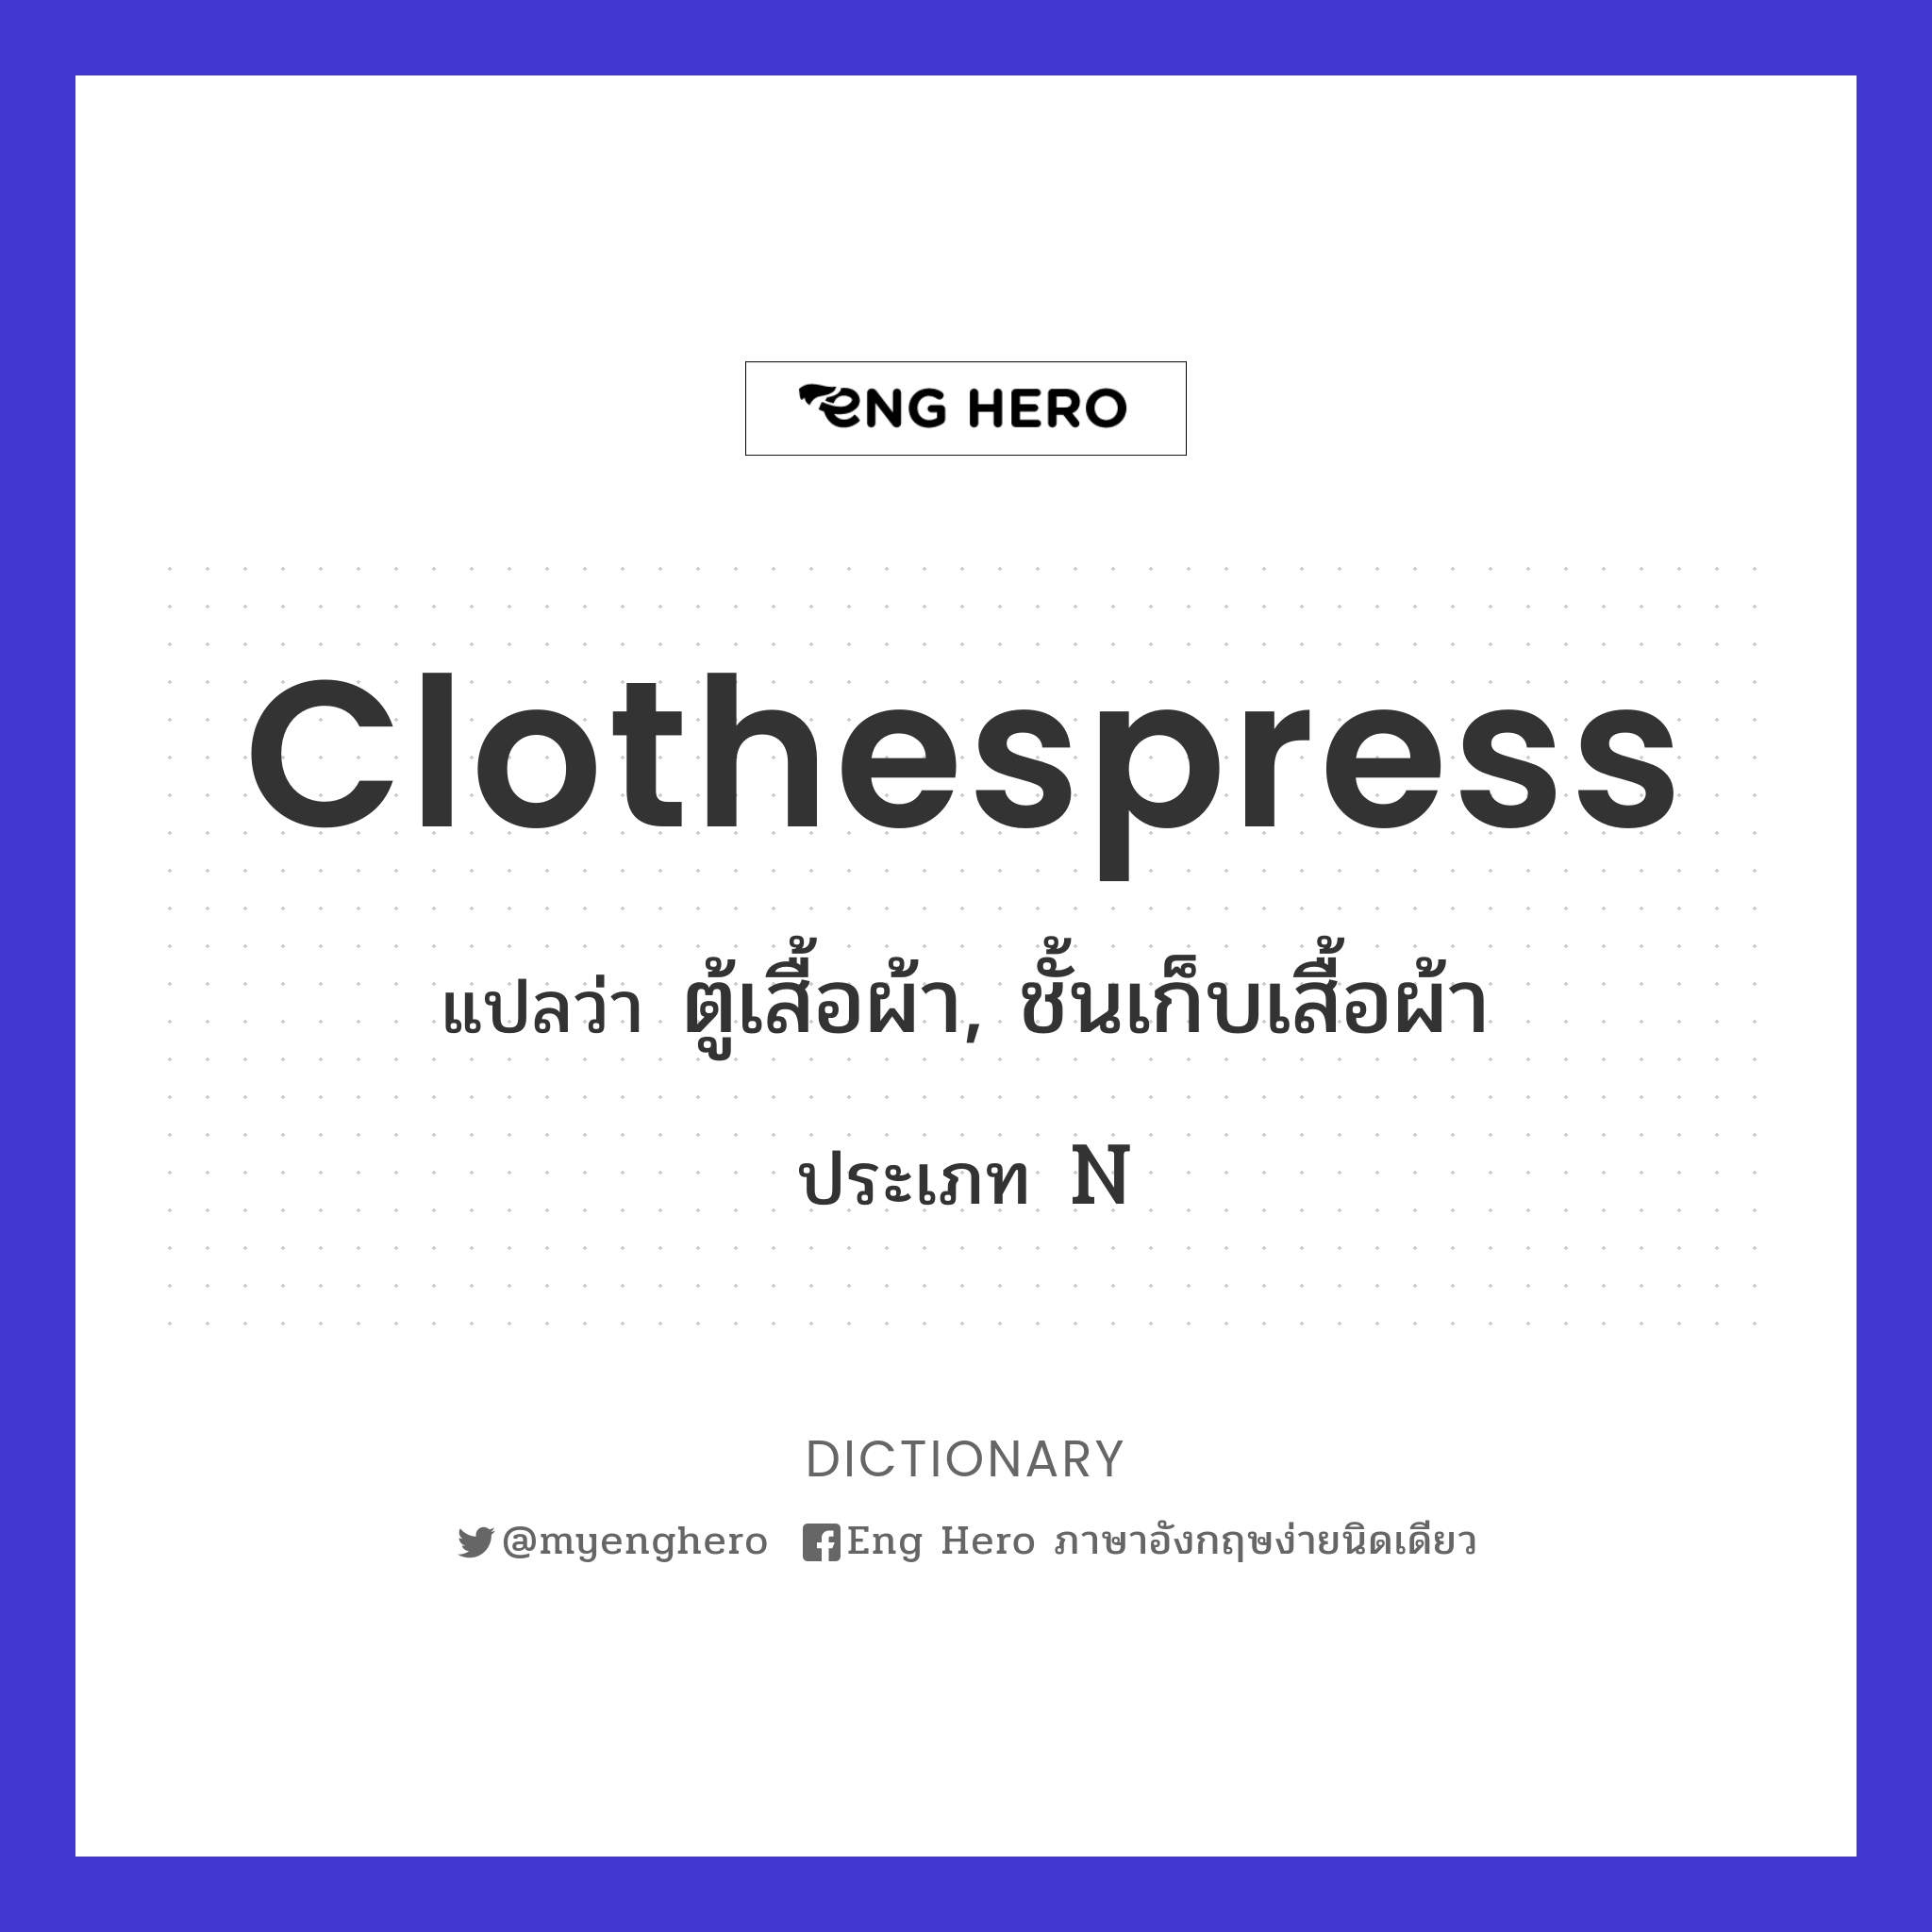 Clothespress แปลว่า ตู้เสื้อผ้า, ชั้นเก็บเสื้อผ้า | Eng Hero เรียนภาษาอังกฤษ  ออนไลน์ ฟรี